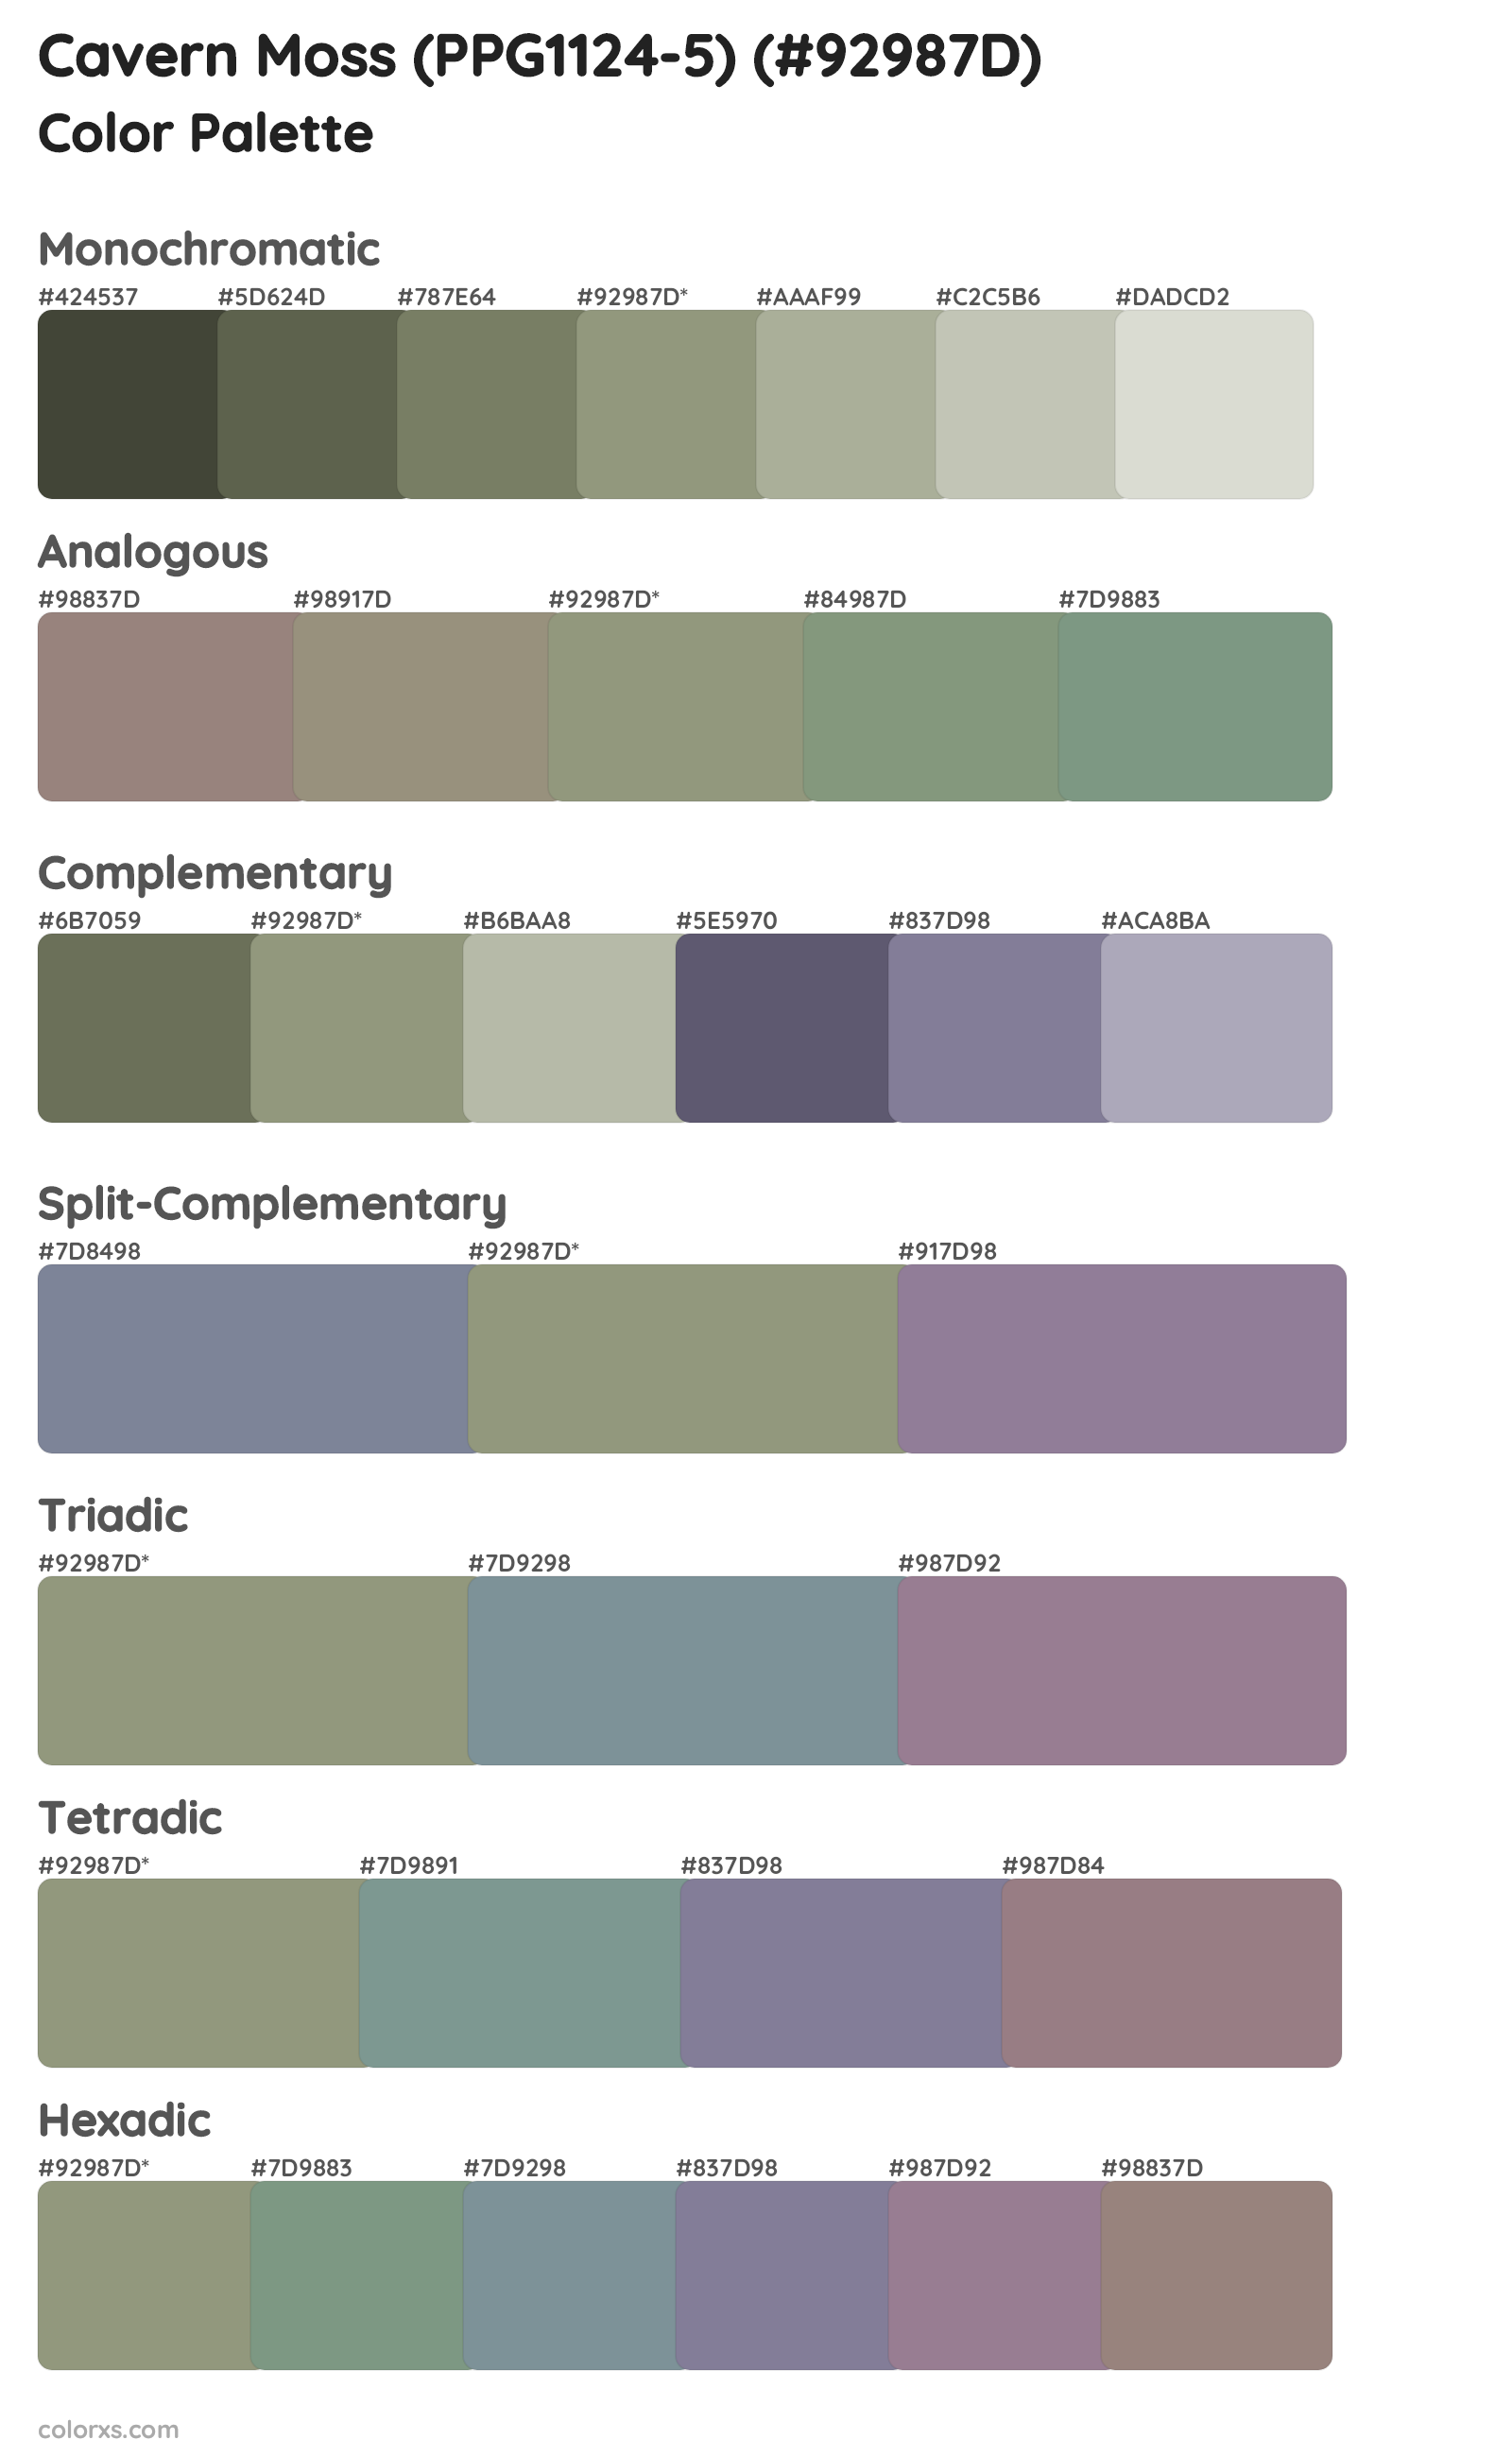 Cavern Moss (PPG1124-5) Color Scheme Palettes